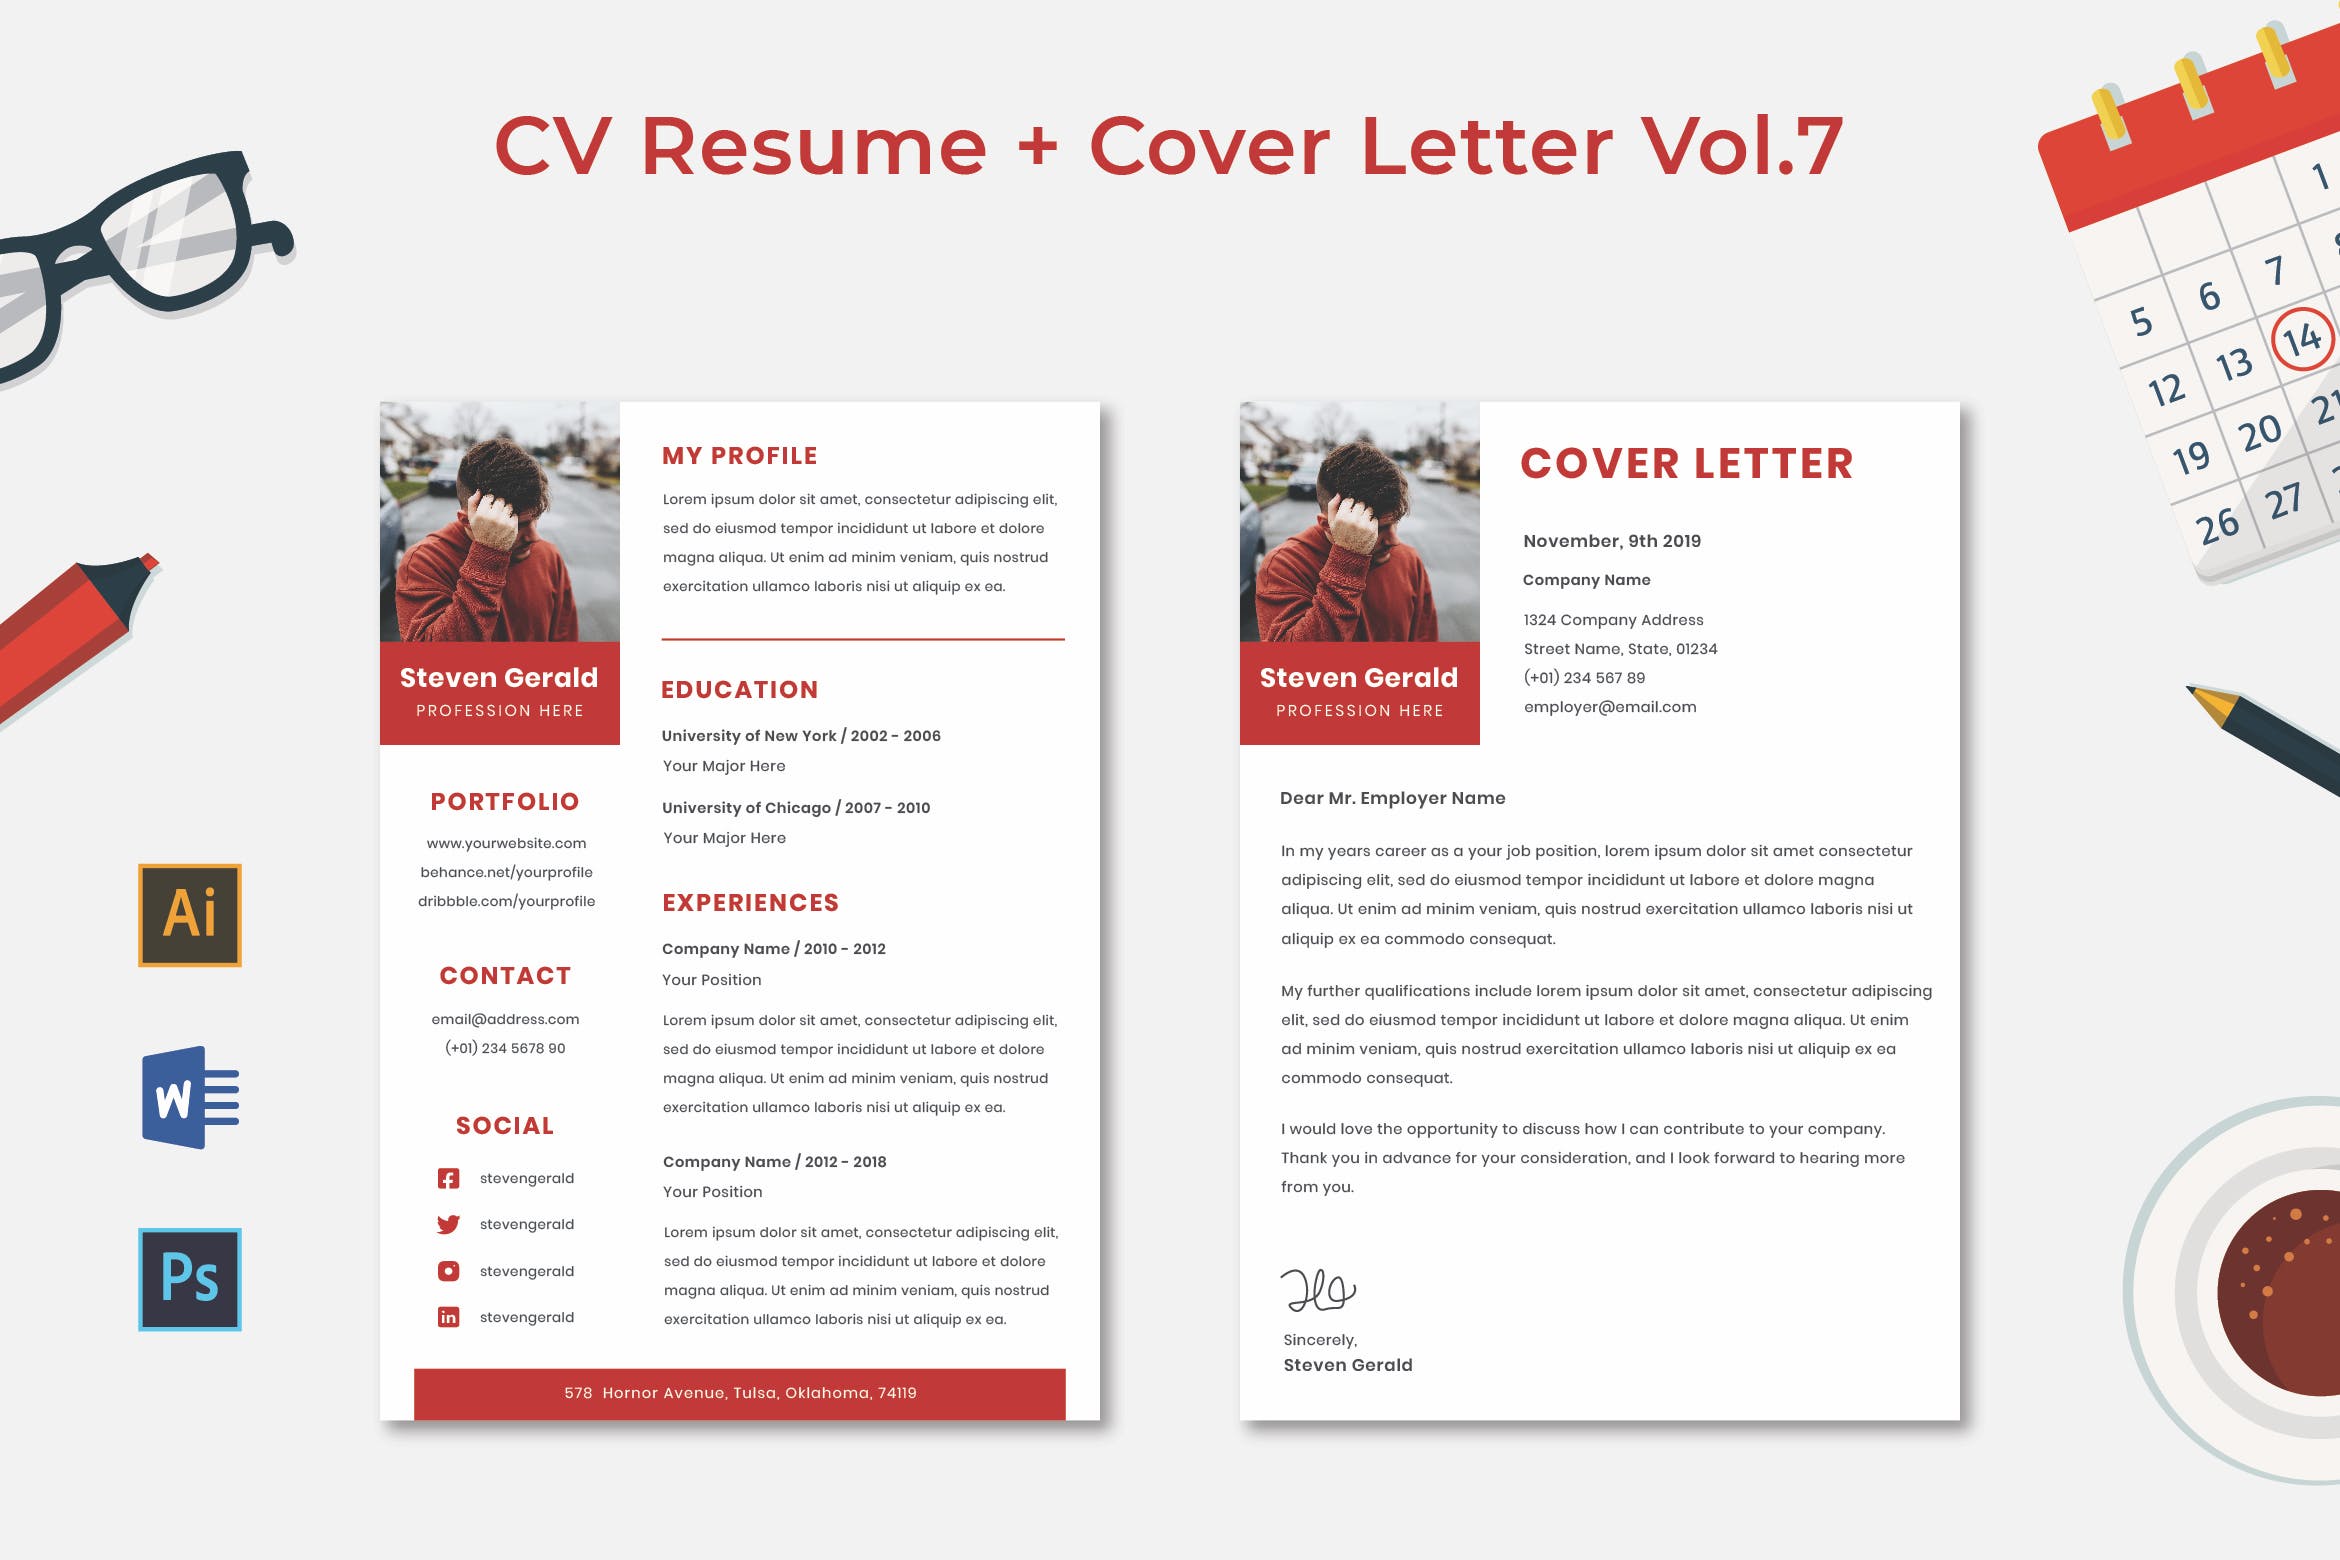 简单朴素风格个人简历/介绍信设计模板 CV Resume Vol.7插图